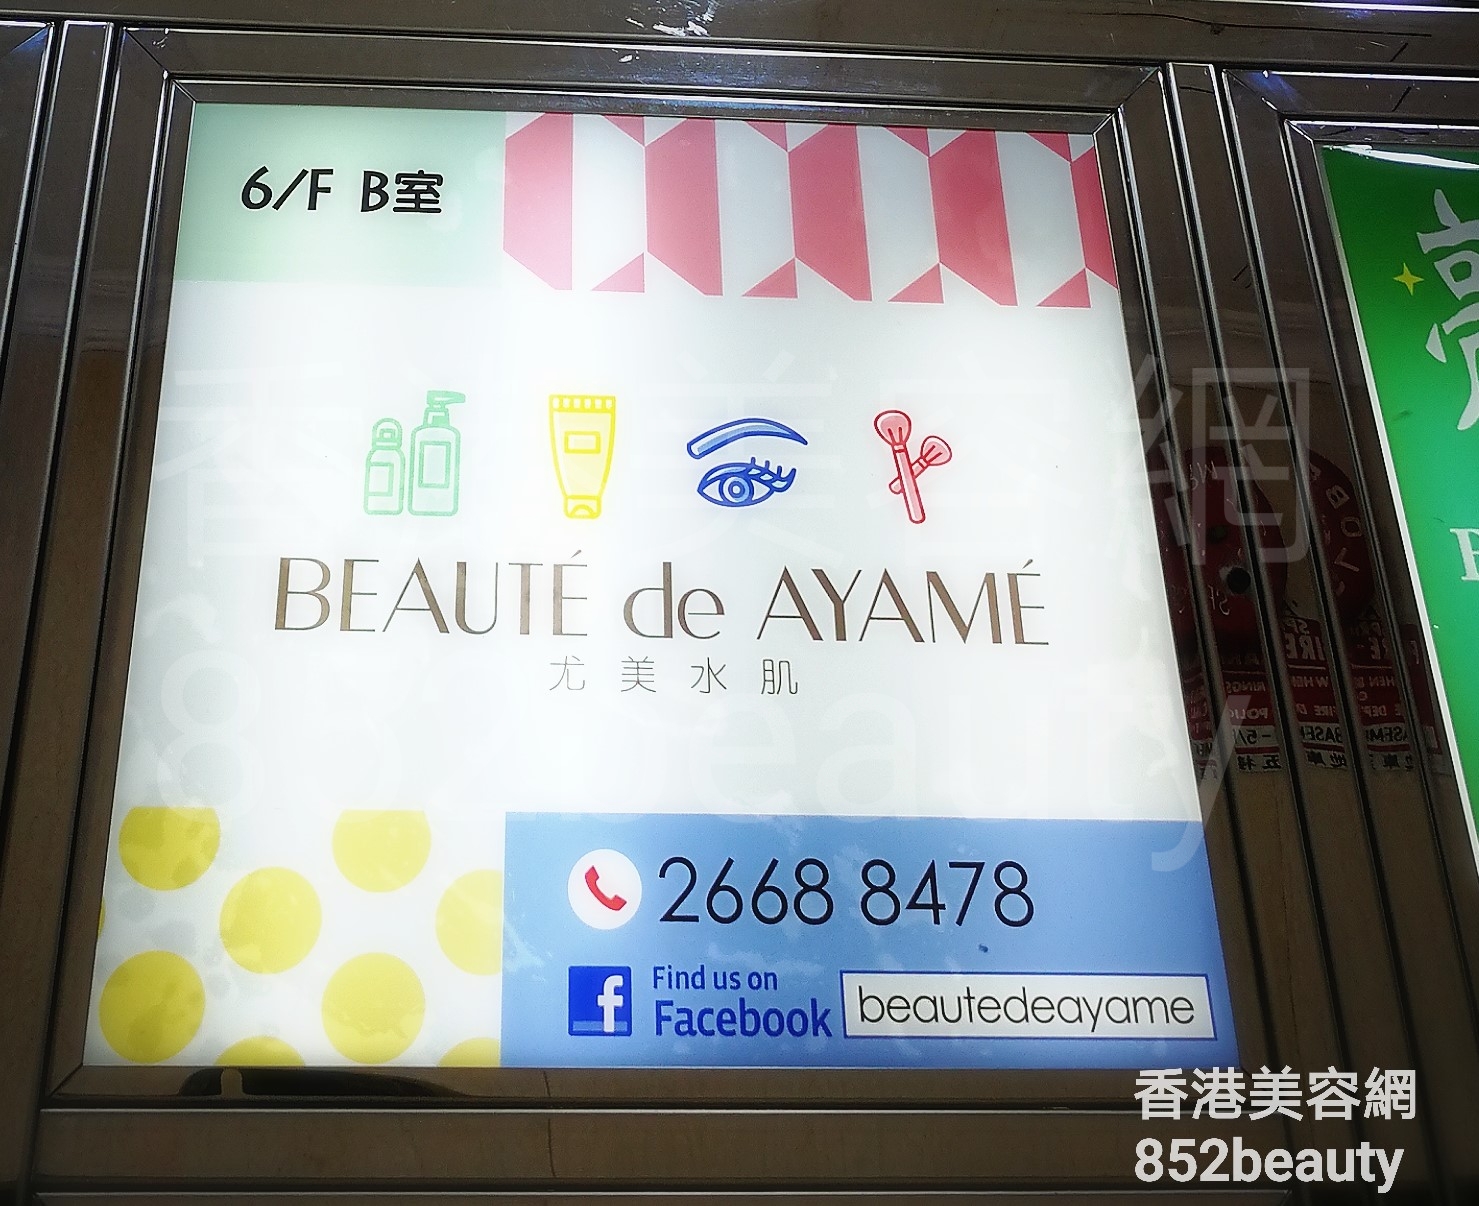 香港美容網 Hong Kong Beauty Salon 美容院 / 美容師: Beauté De AYAMÉ 尤美水肌